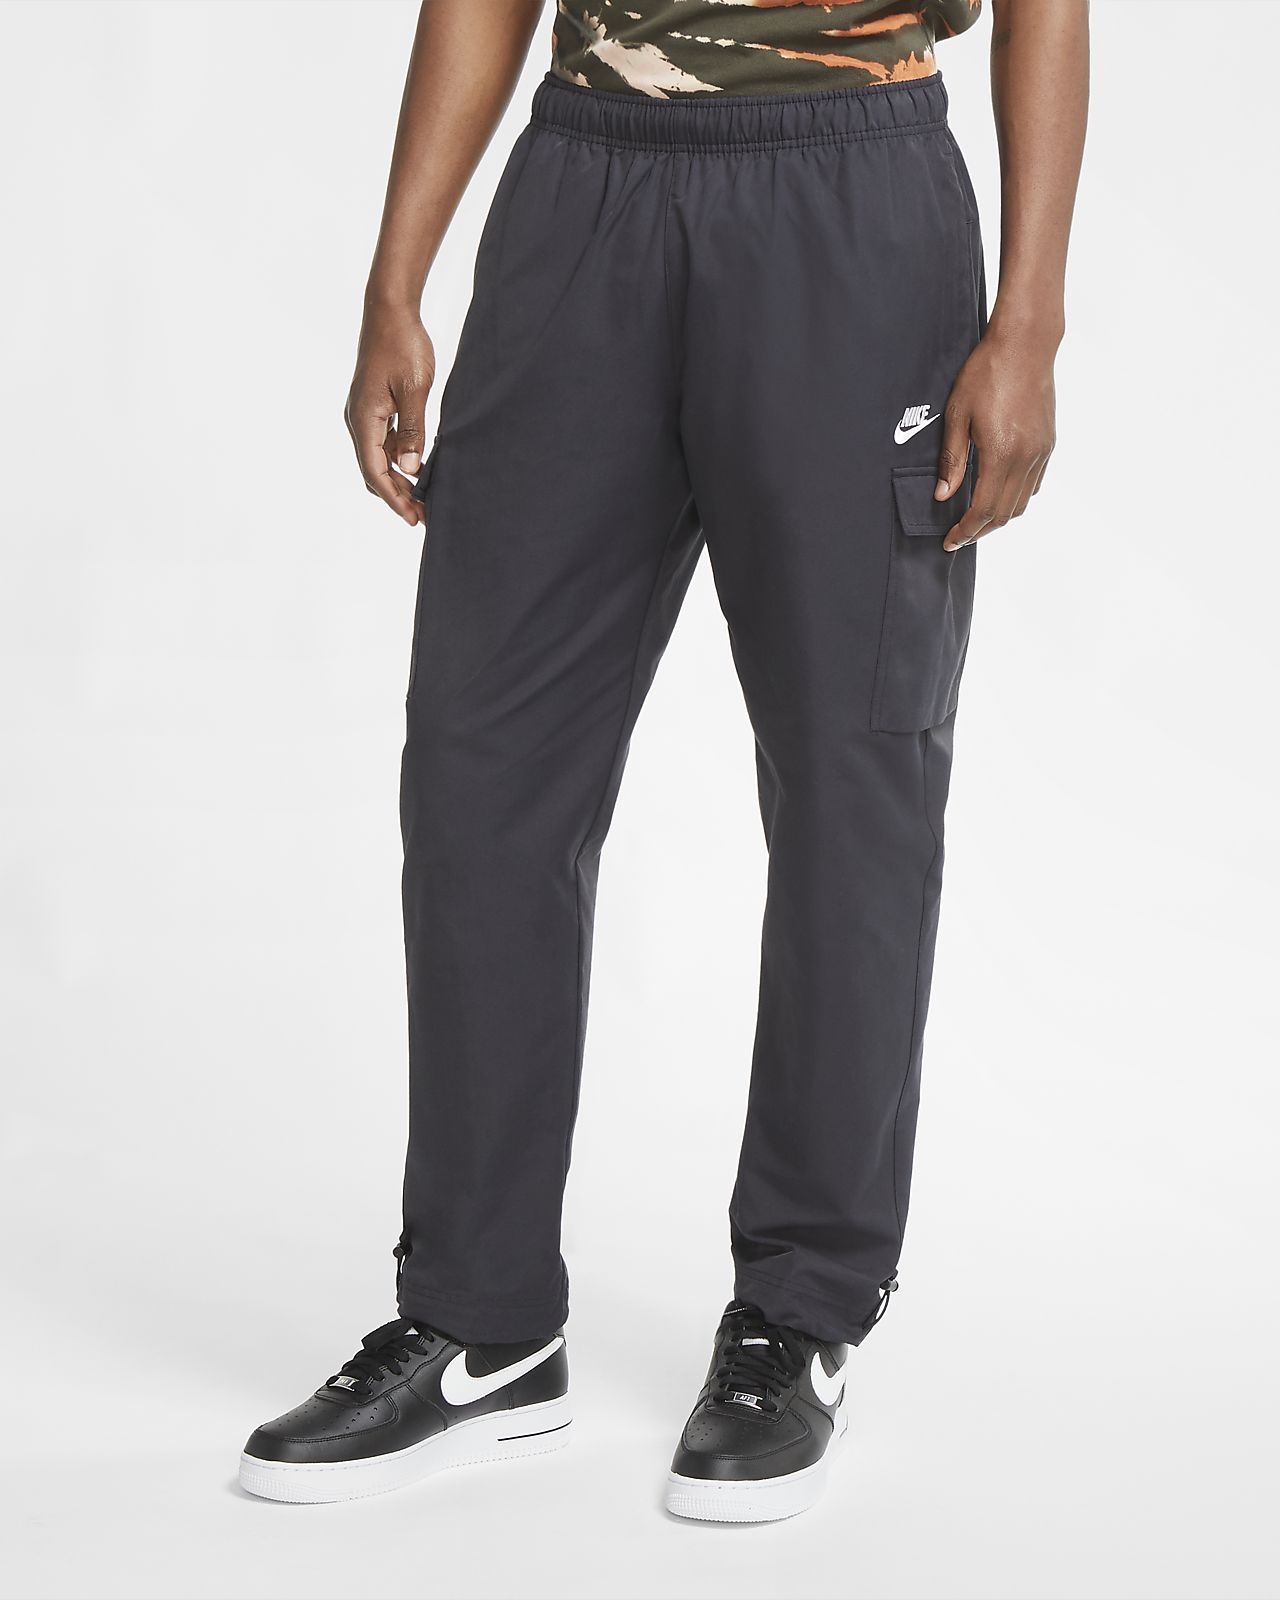 Download Nike Sportswear Men's Woven Pants. Nike.com